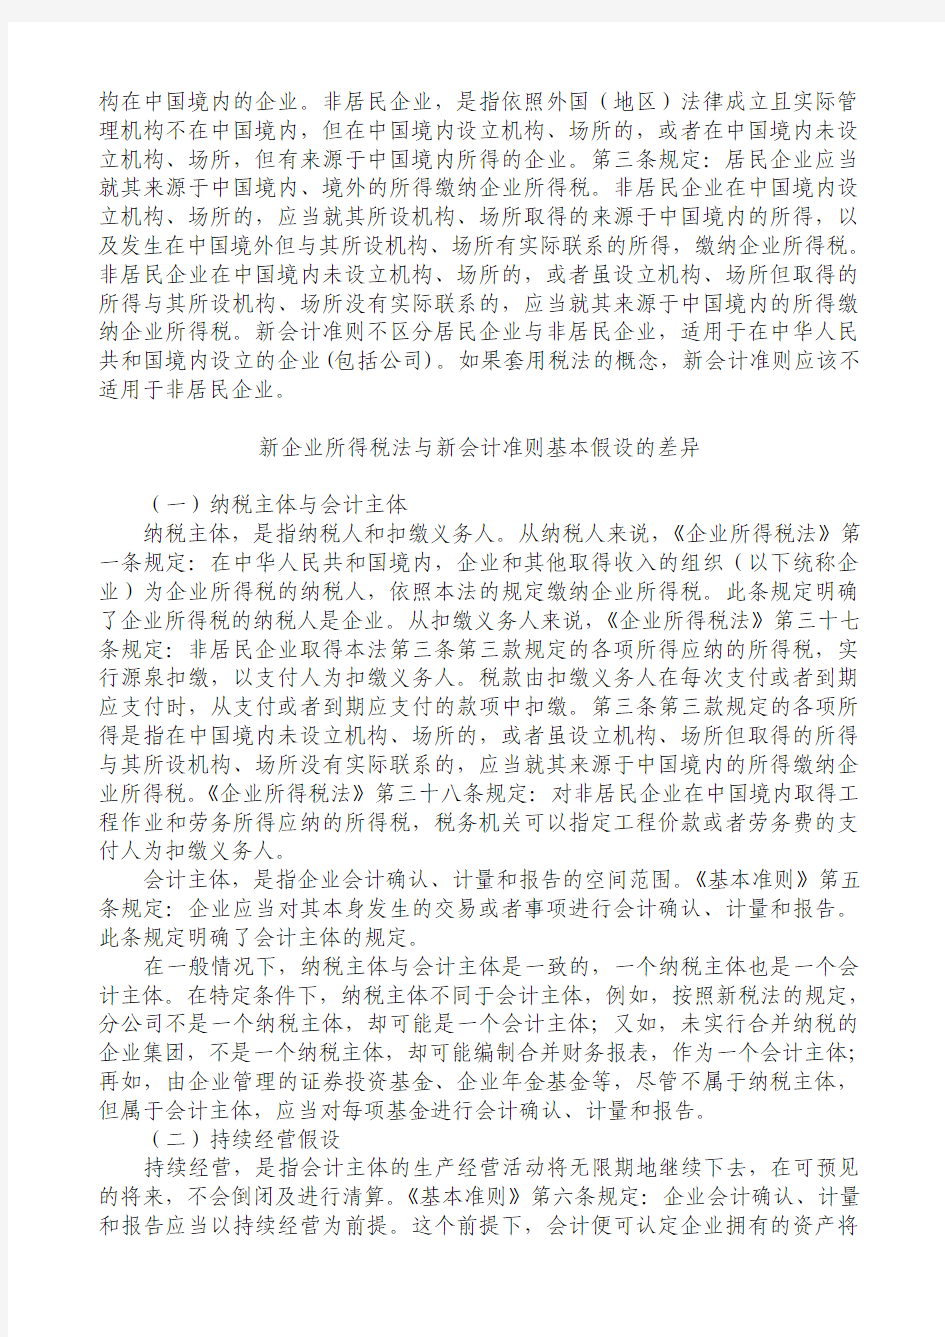 中国税务报新会计准则与税法的差异专题连载.doc